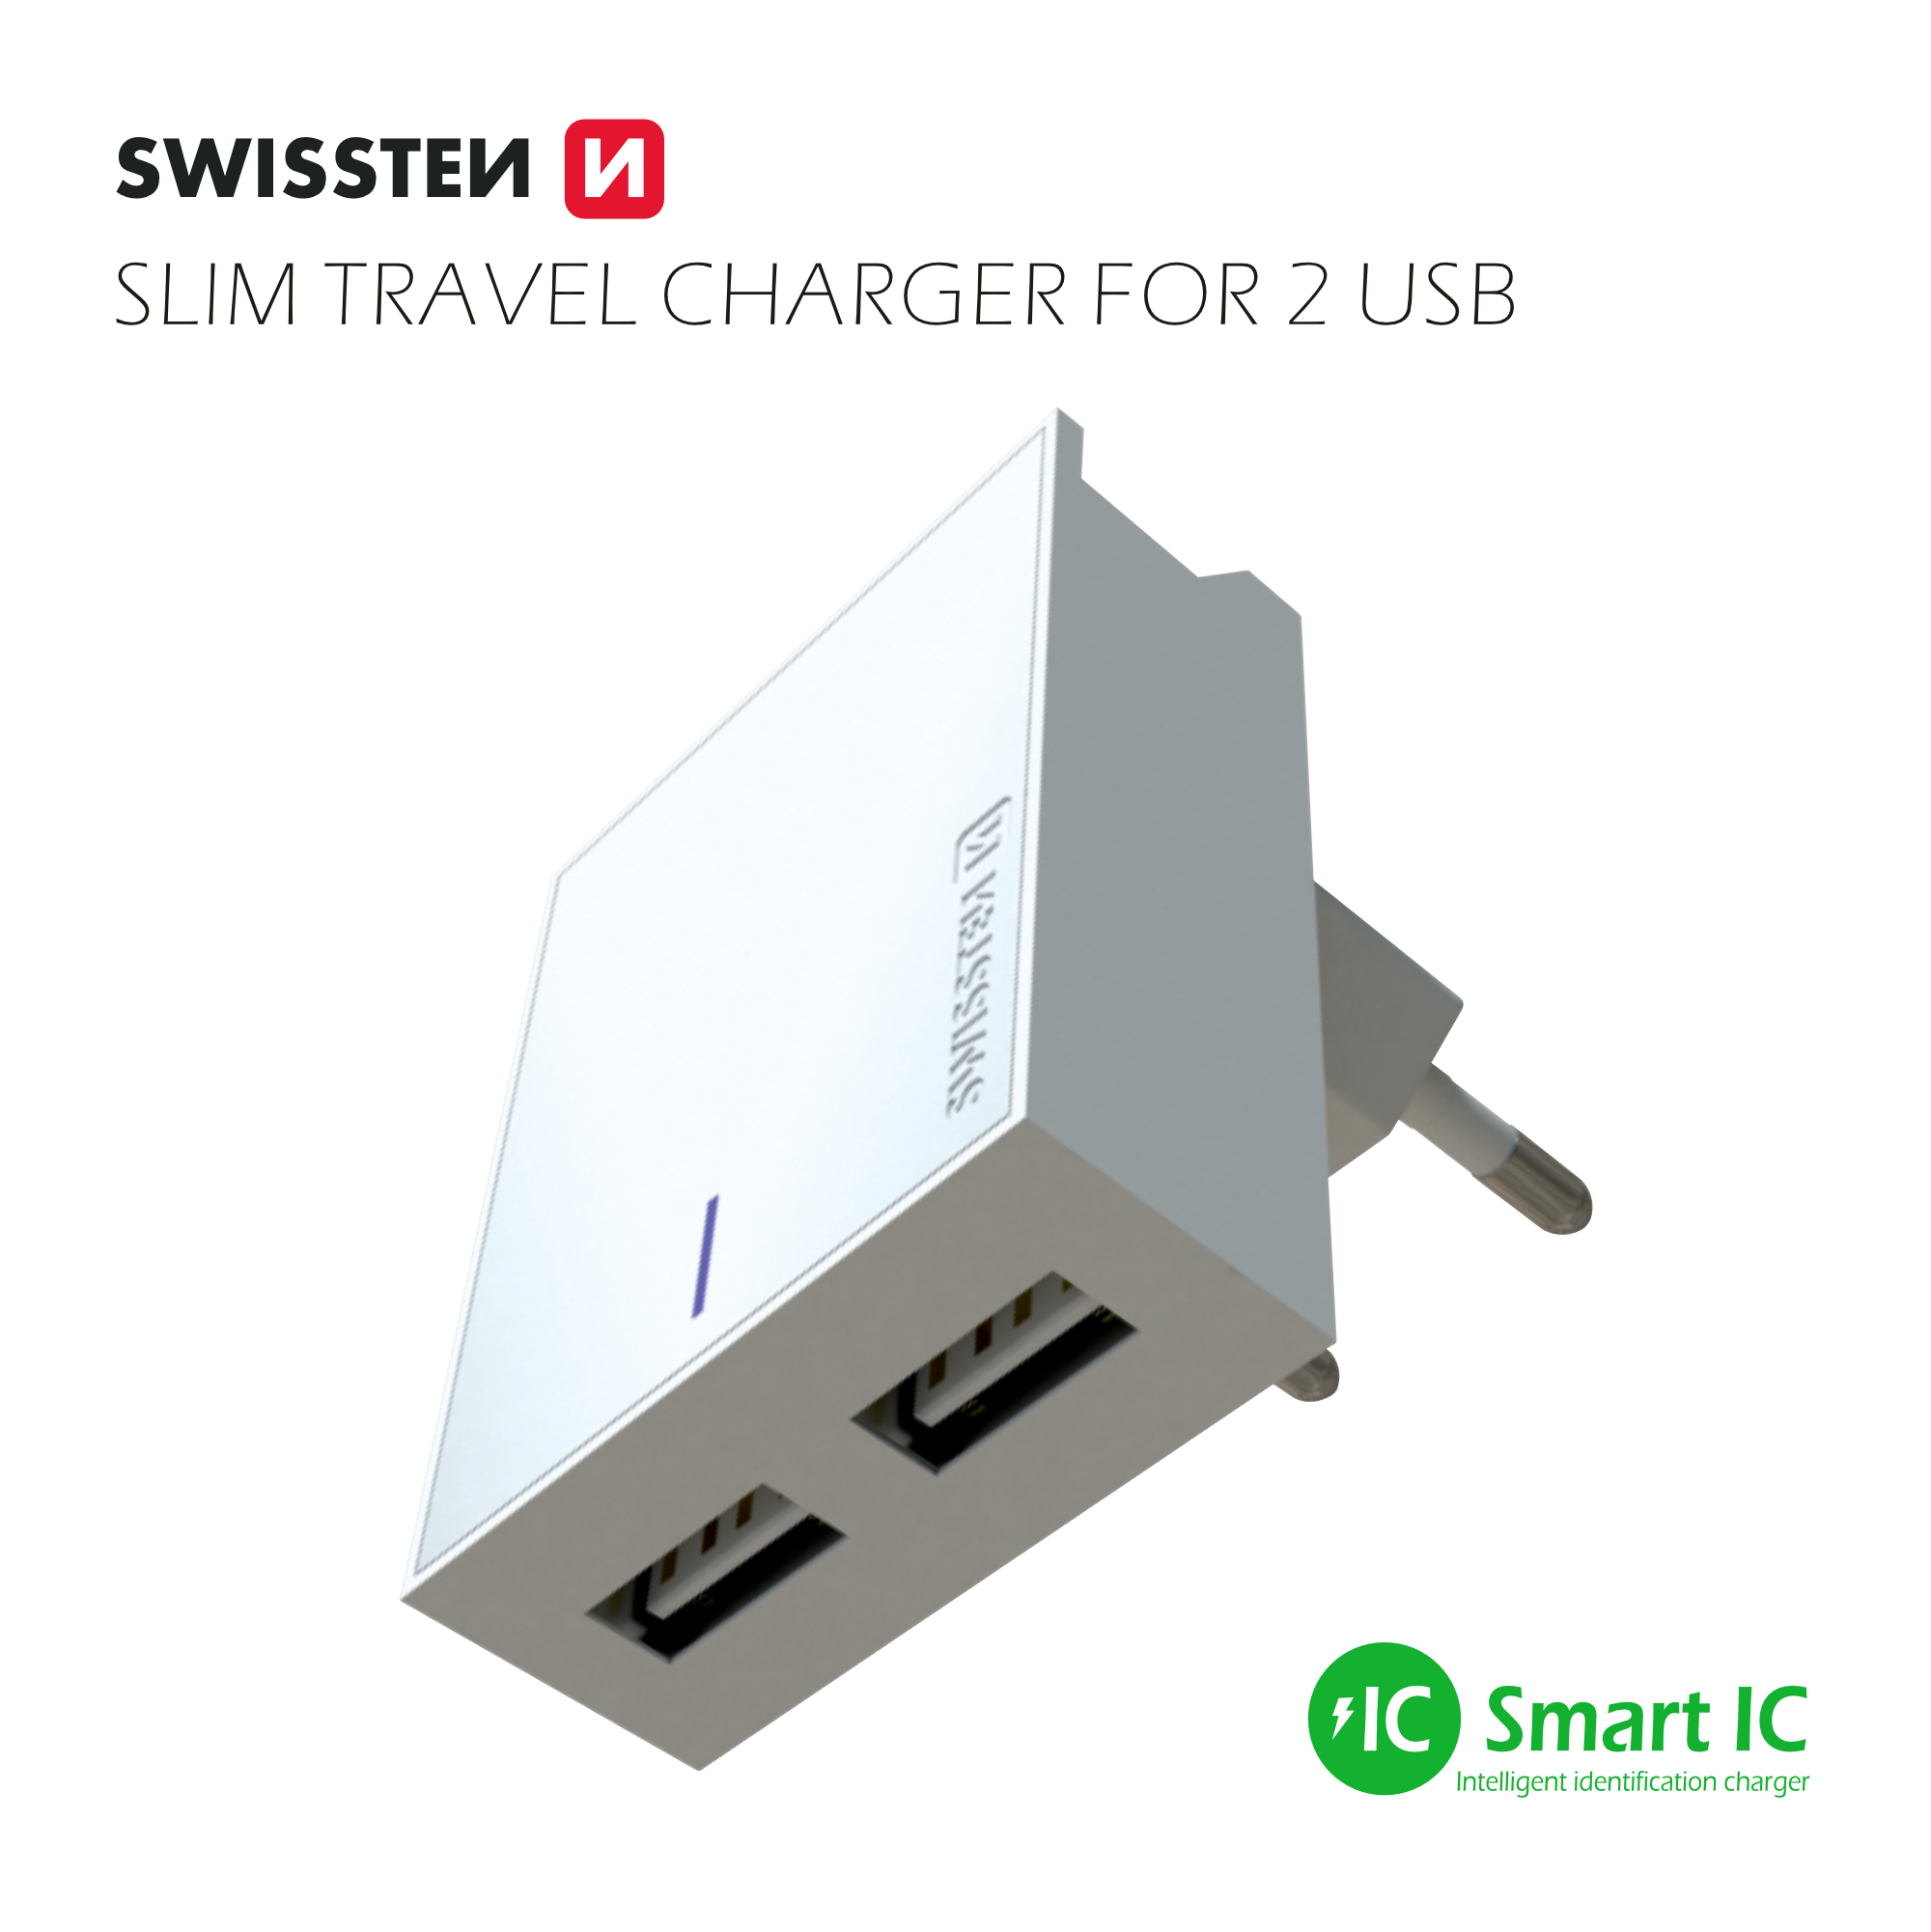 Swissten Travel Adapter Smart IC 2x USB 3A Power + Cablu de date USB / Micro USB 1,2 M Alb thumb